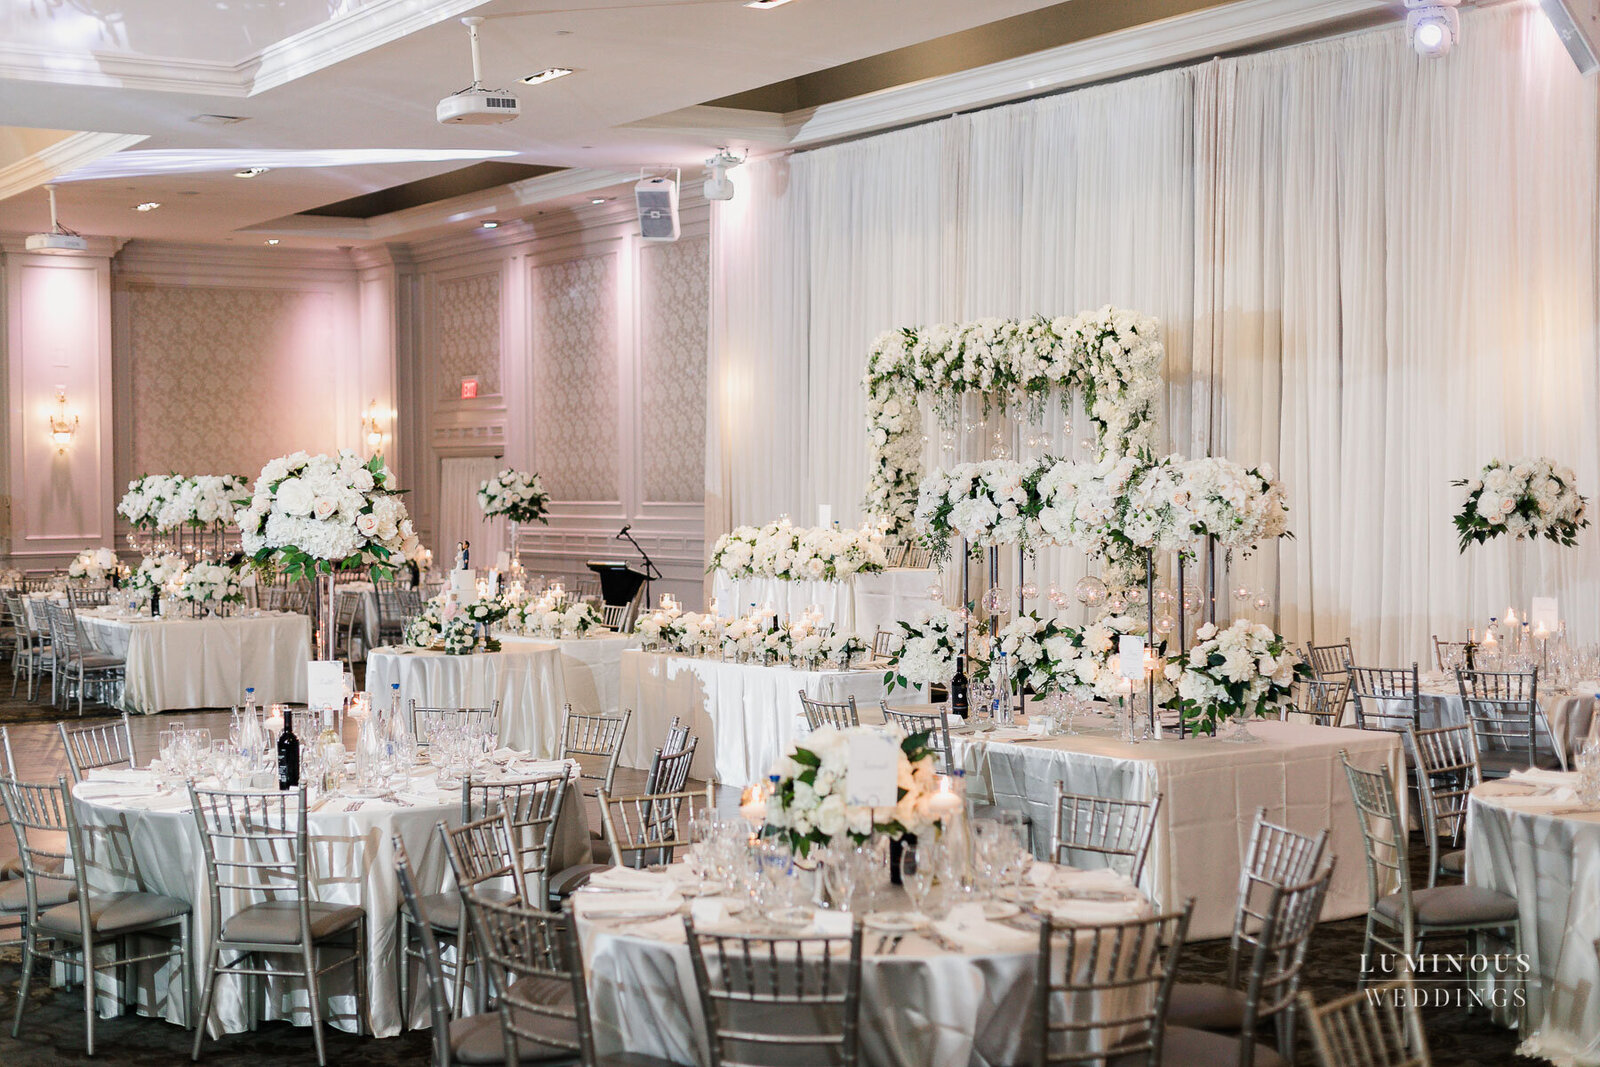 215 Banquet Hall Toronto Wedding Venues